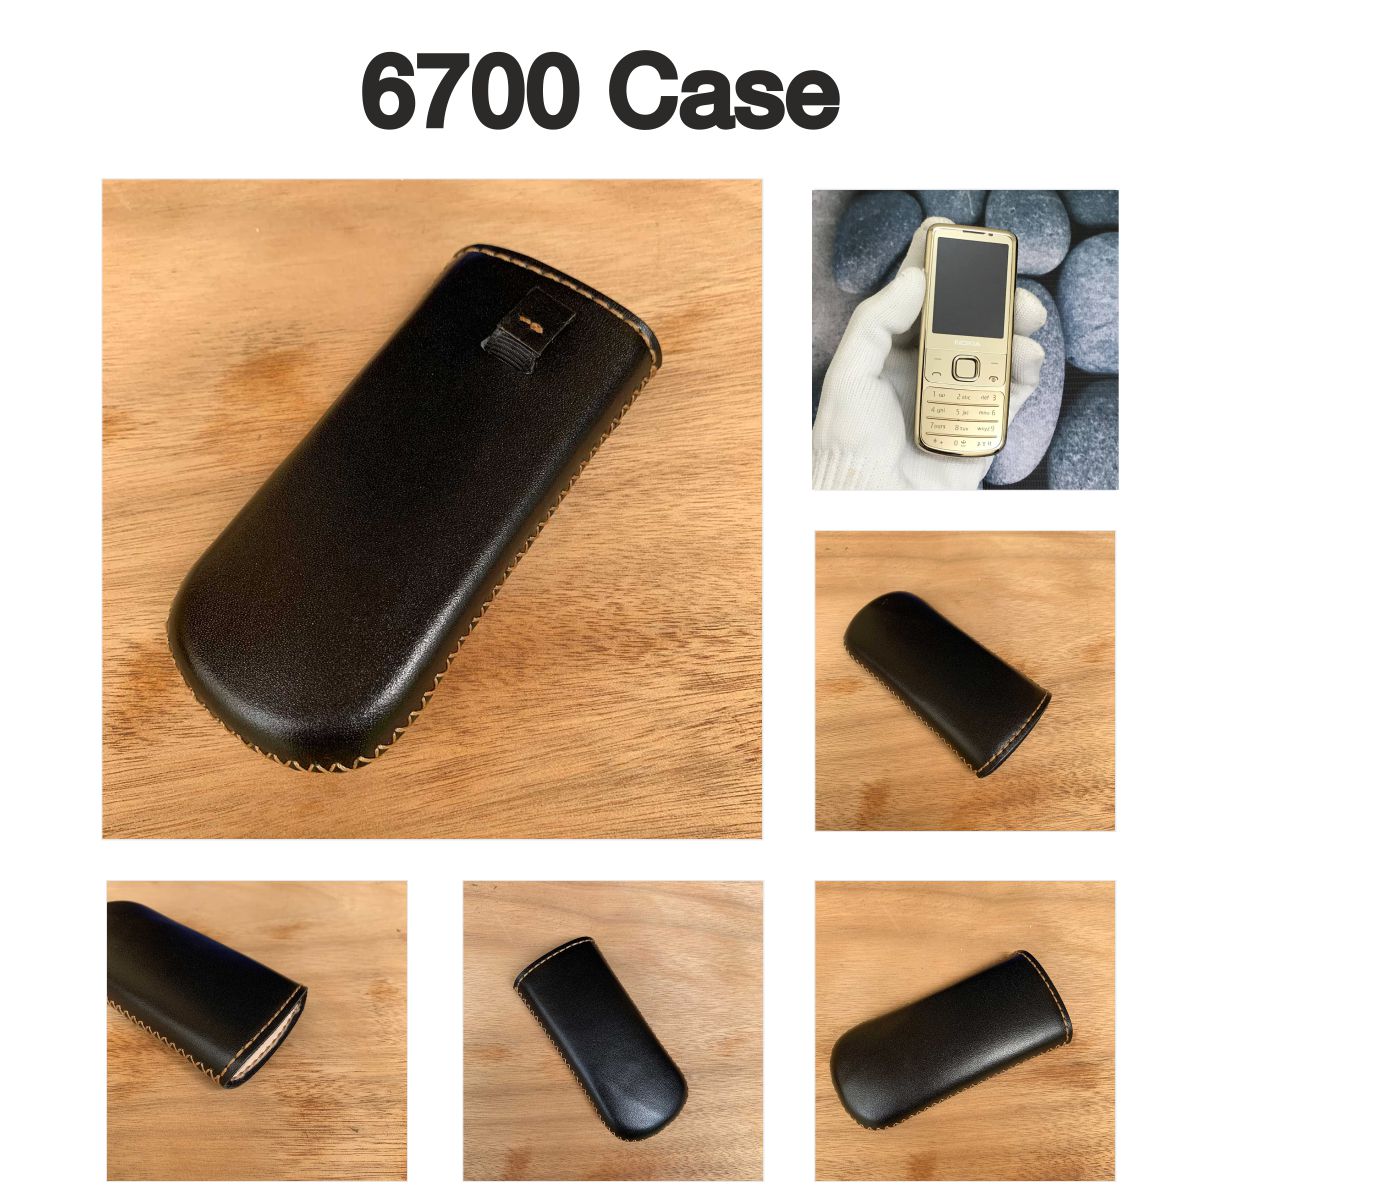 Bao điện thoại Nokia 8800 - Da thật nhập khẩu - Handmade thủ công - Màu Đen